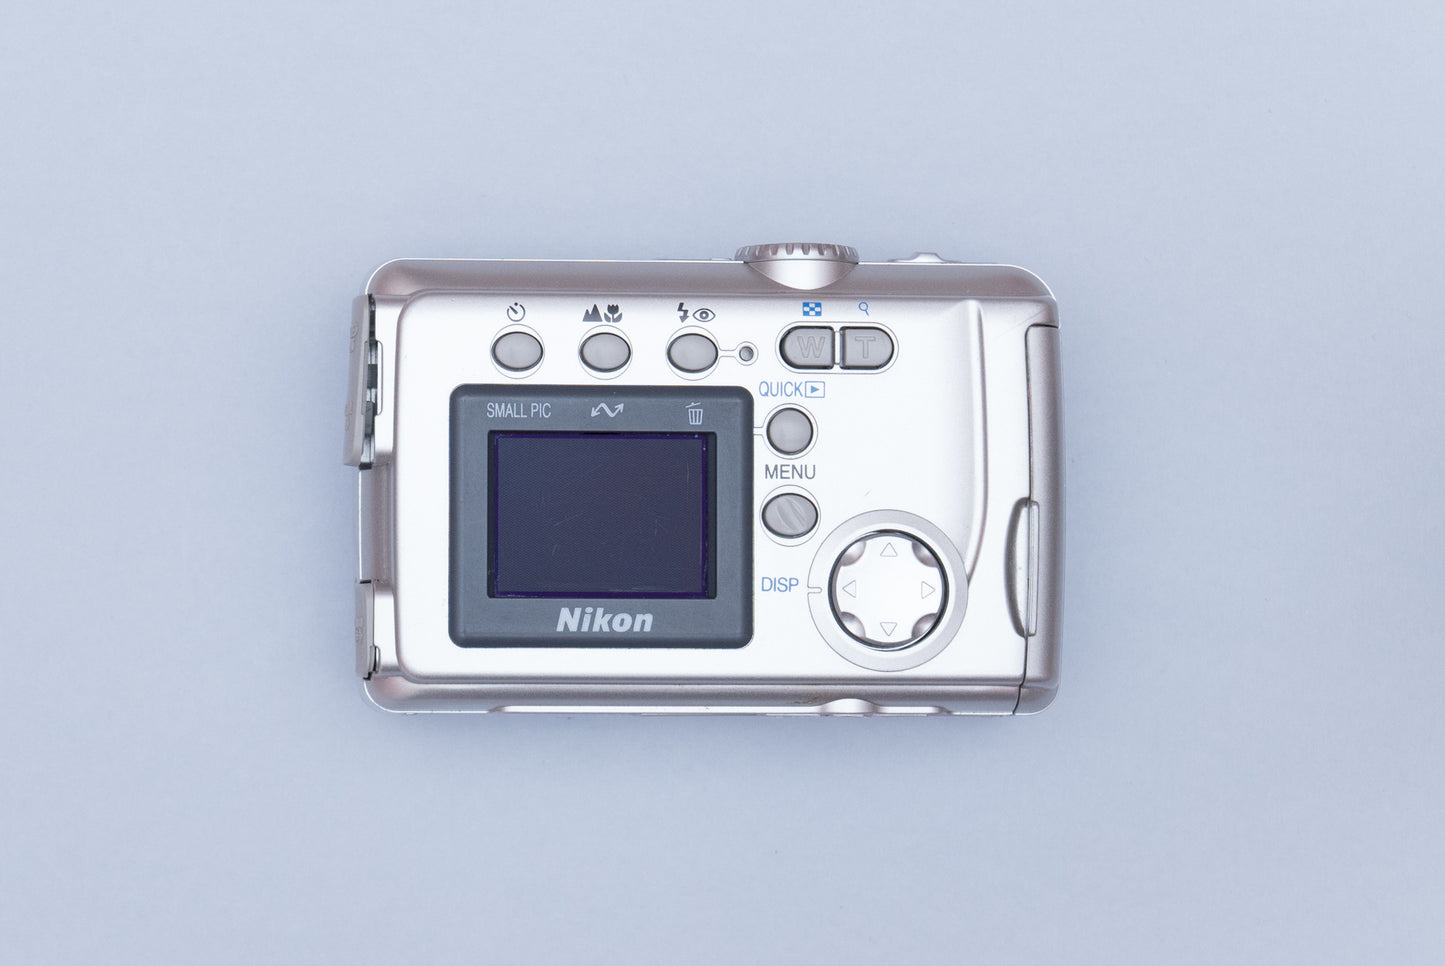 Nikon Coolpix 2000 Compact Y2K Digital Camera